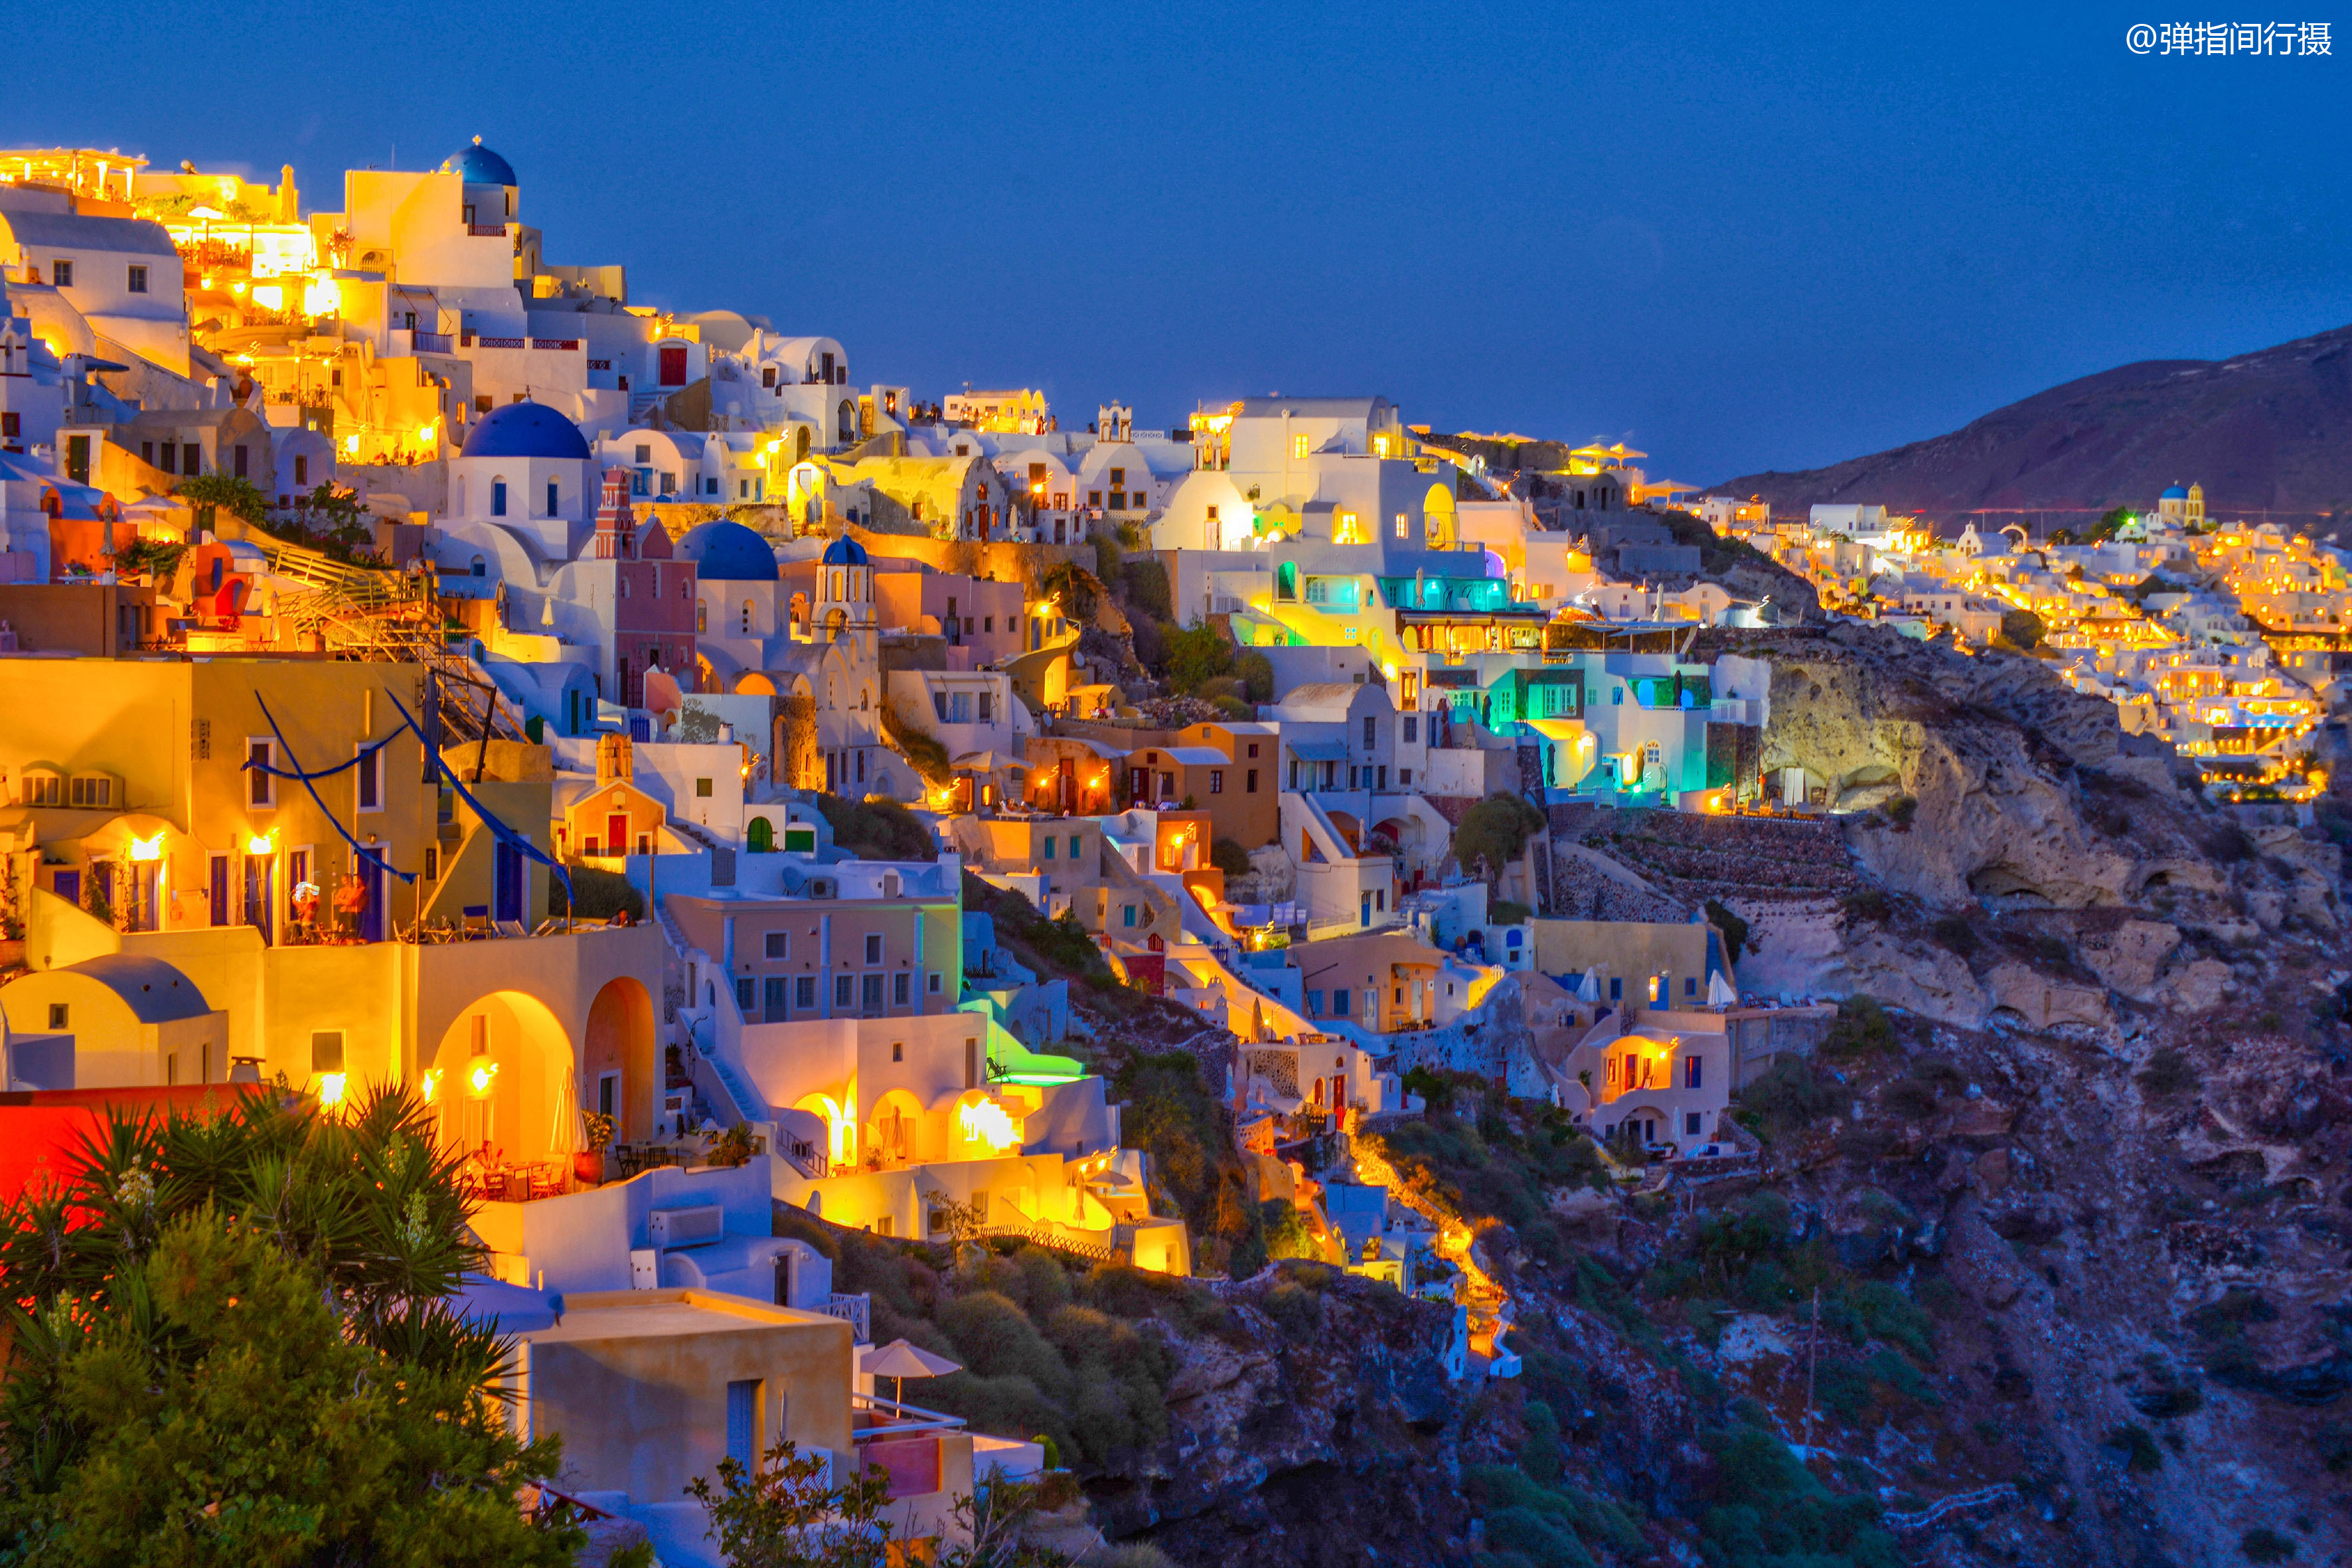 希腊最梦幻岛屿,民居修在爱琴海悬崖上,美如童话世界